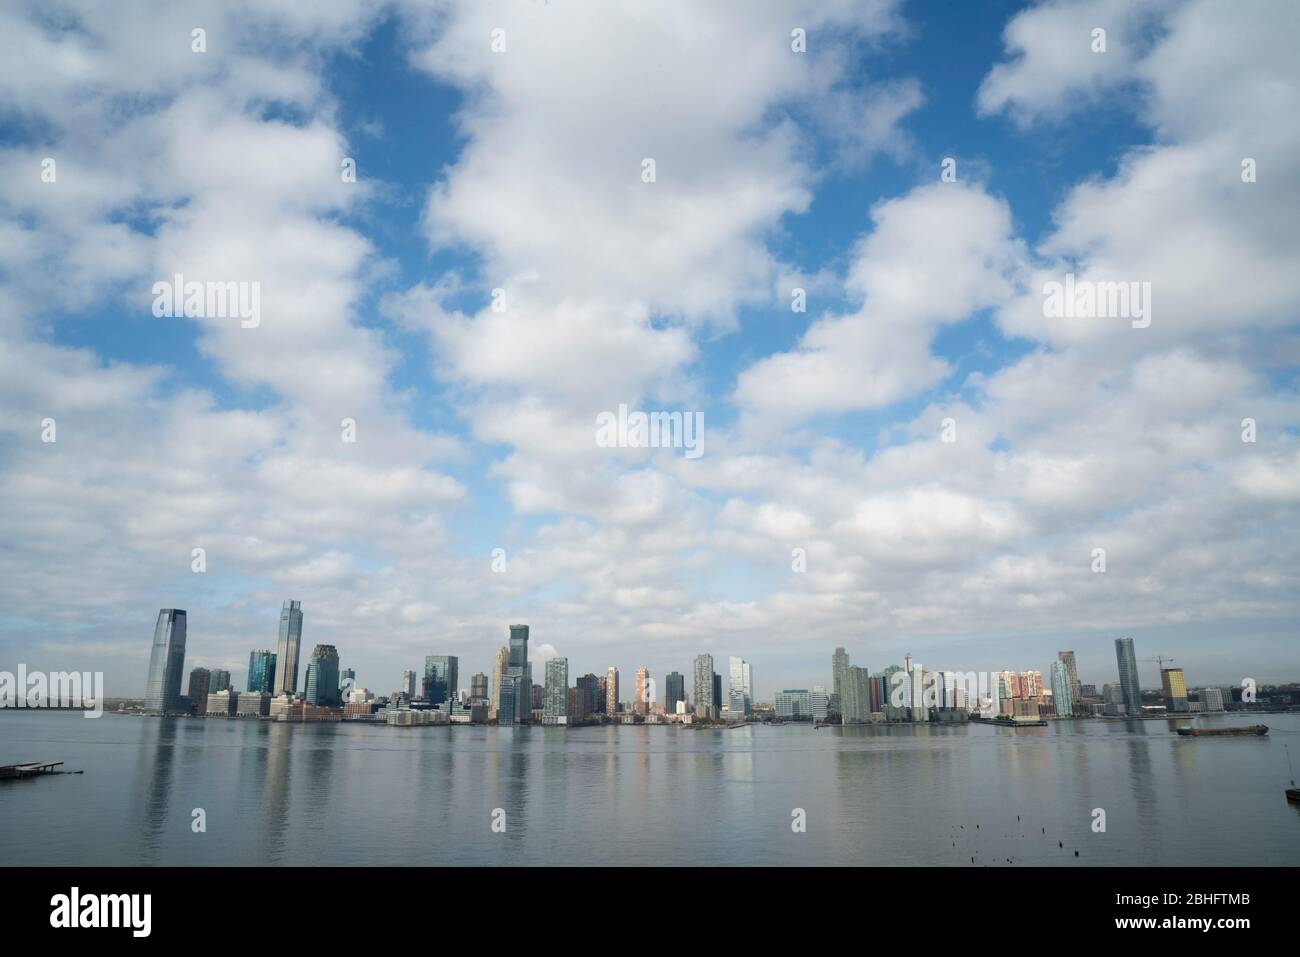 Una mattina a fine aprile, i grattacieli di Jersey City, New Jersey e del fiume Hudson furono sormontati da un panorama spettacolare di nuvole e cielo. Foto Stock